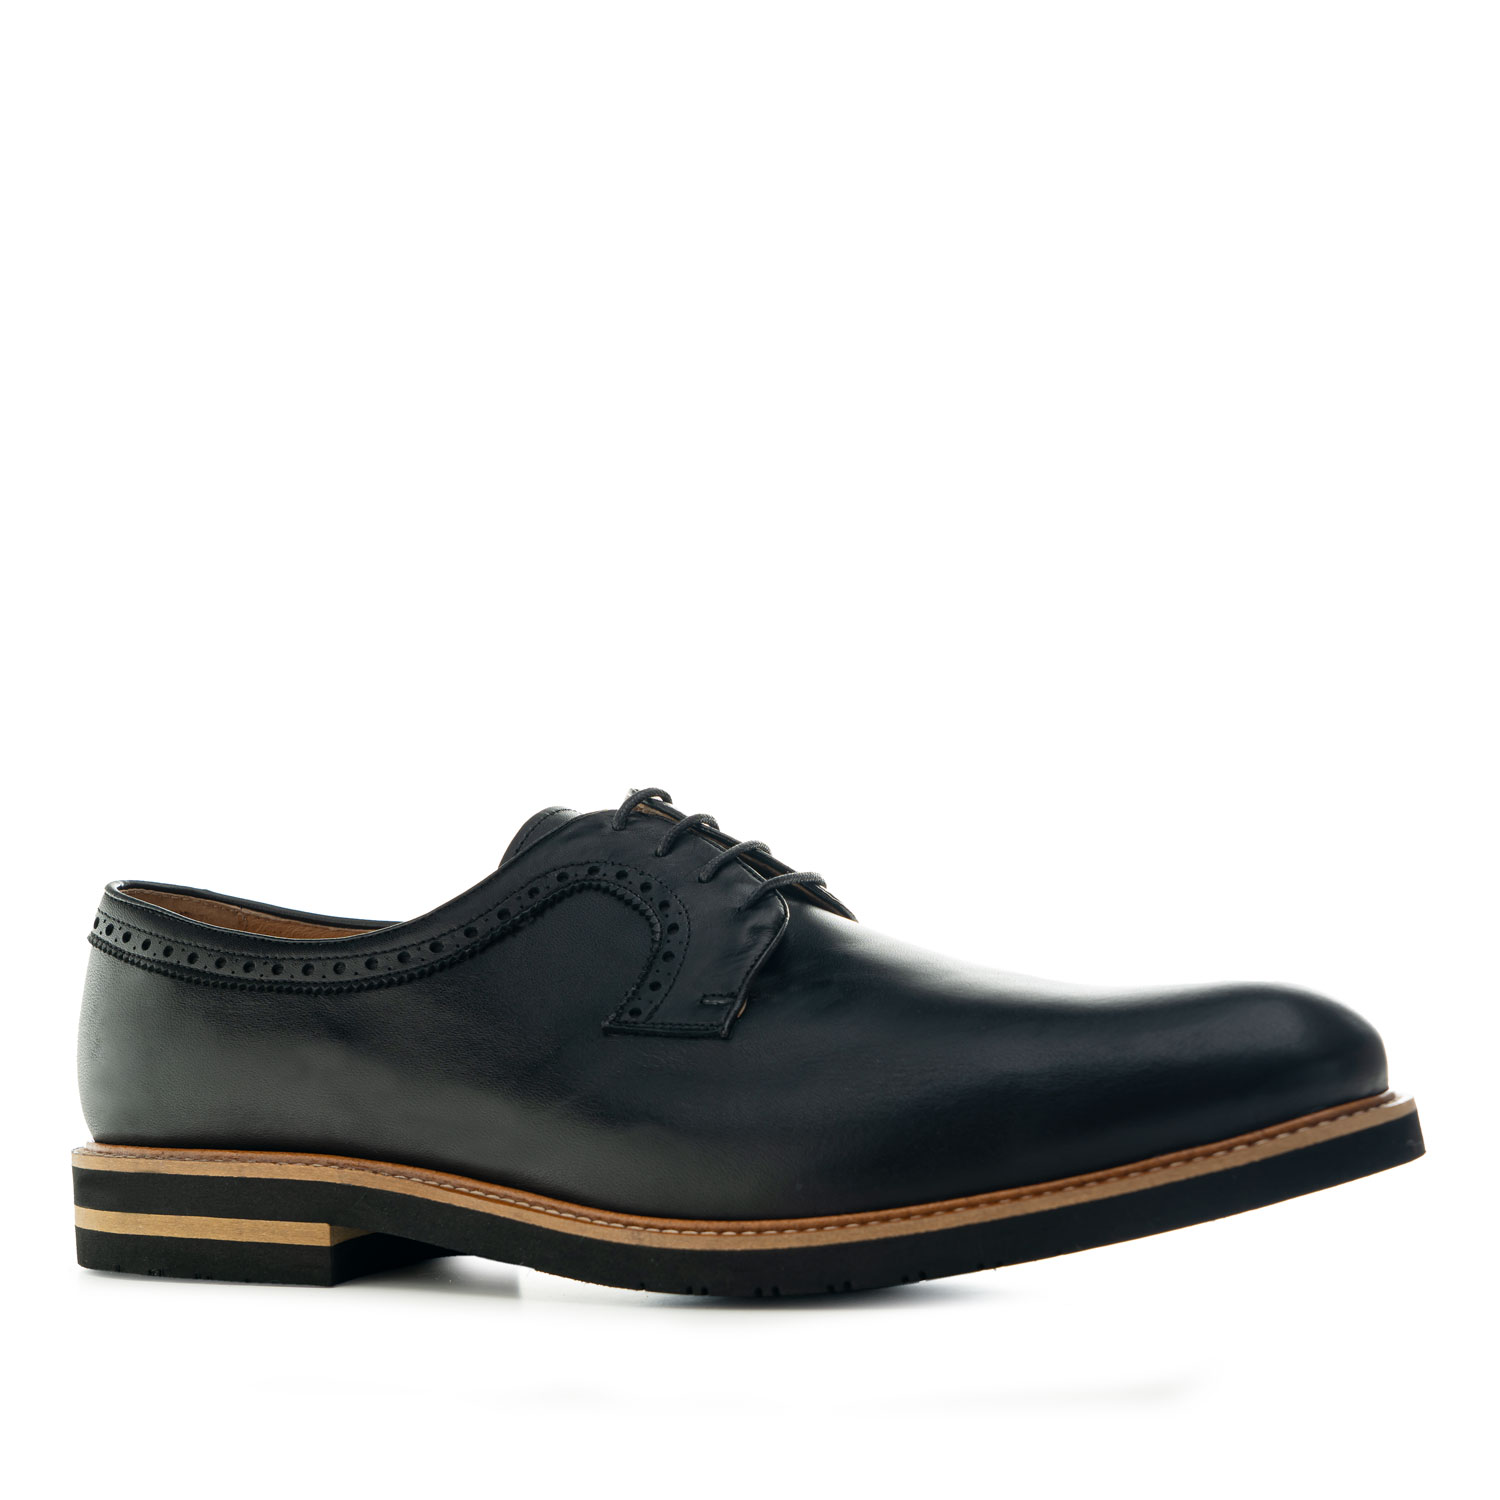 Chaussures pour Hommes style Oxford en cuir Noir 